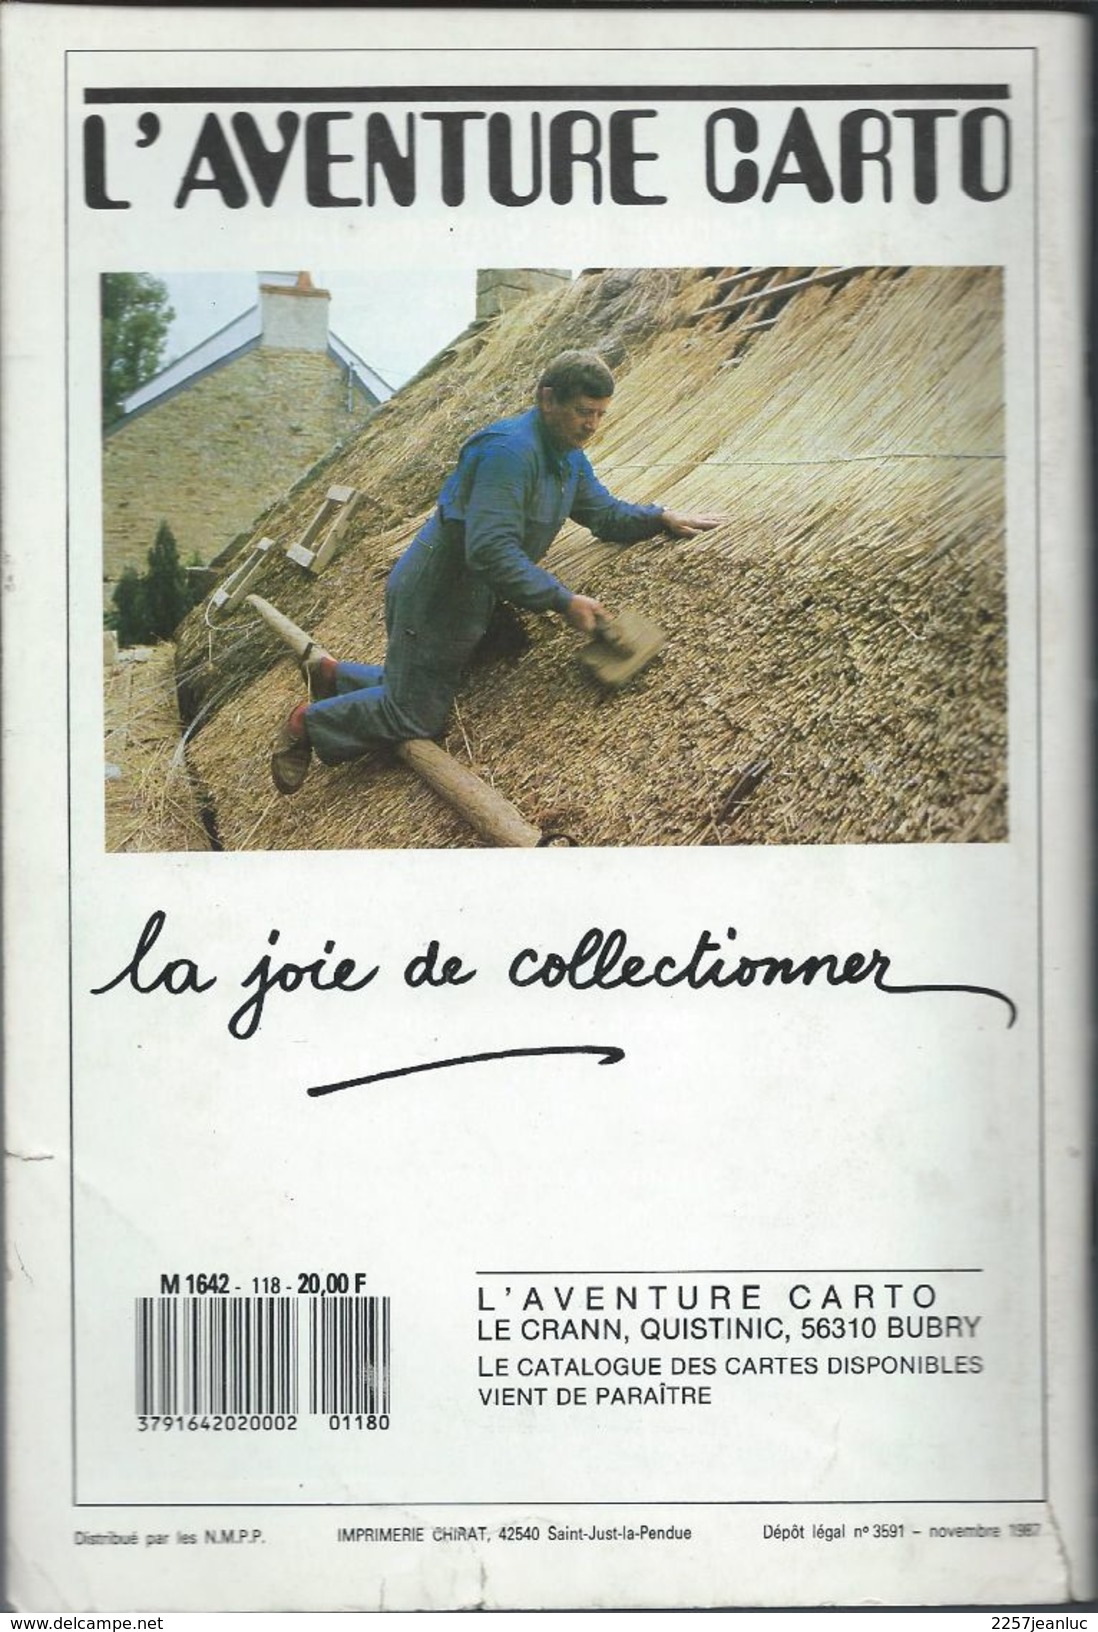 Cartes Postales Et Collections Avril 1988  Magazines N: 120 Llustration &  Thèmes Divers 120 Pages - Français